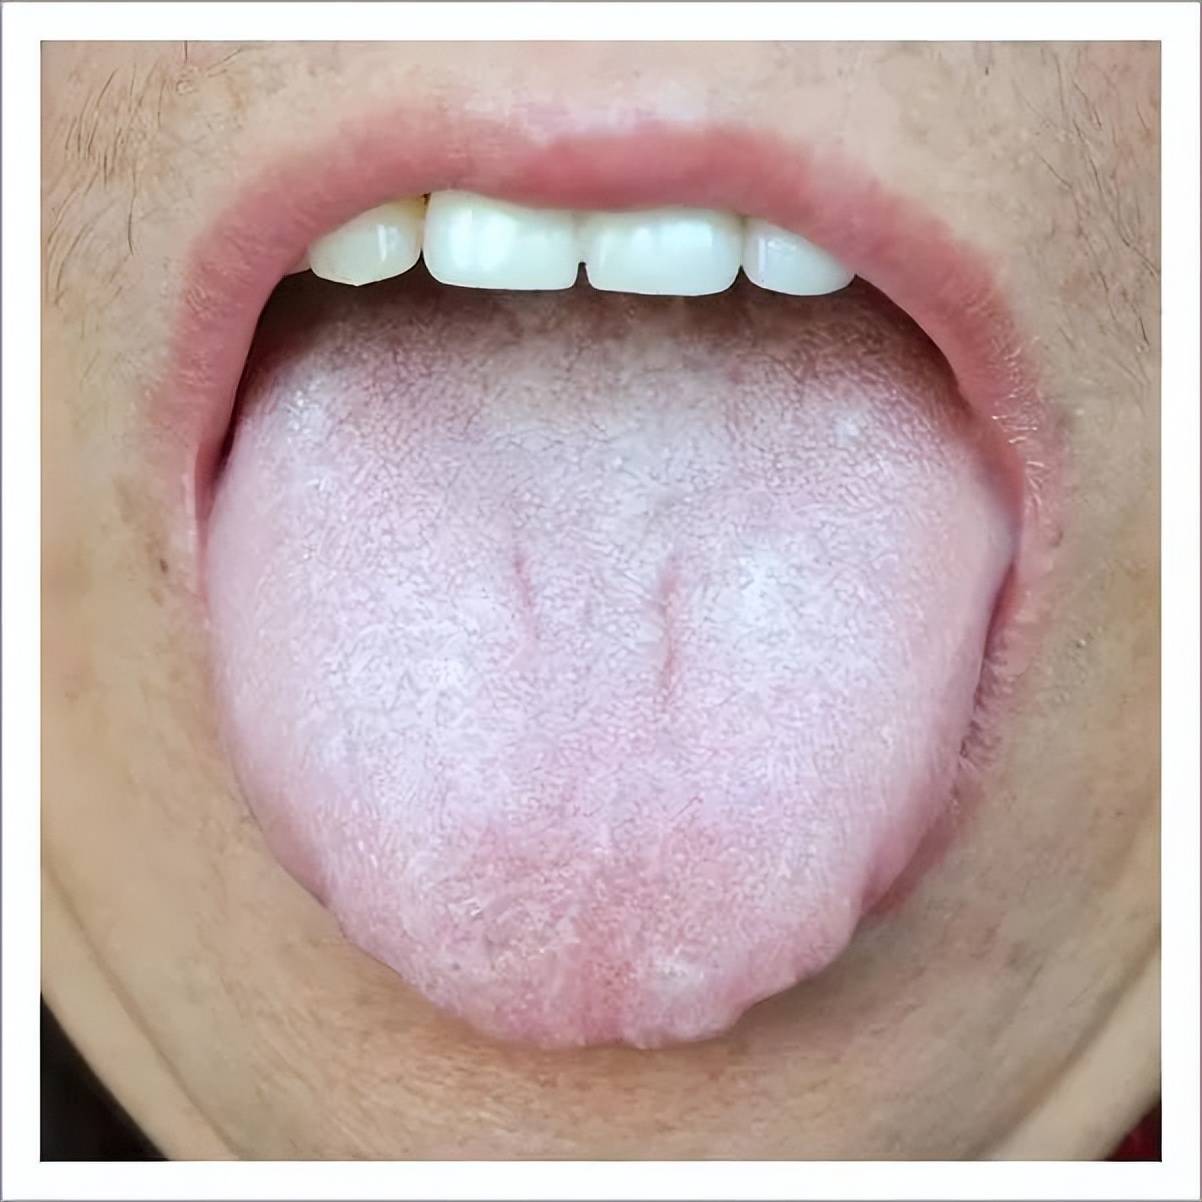 看舌辨健康:舌头越好看,人就越健康,舌头越难看,身体就越差劲